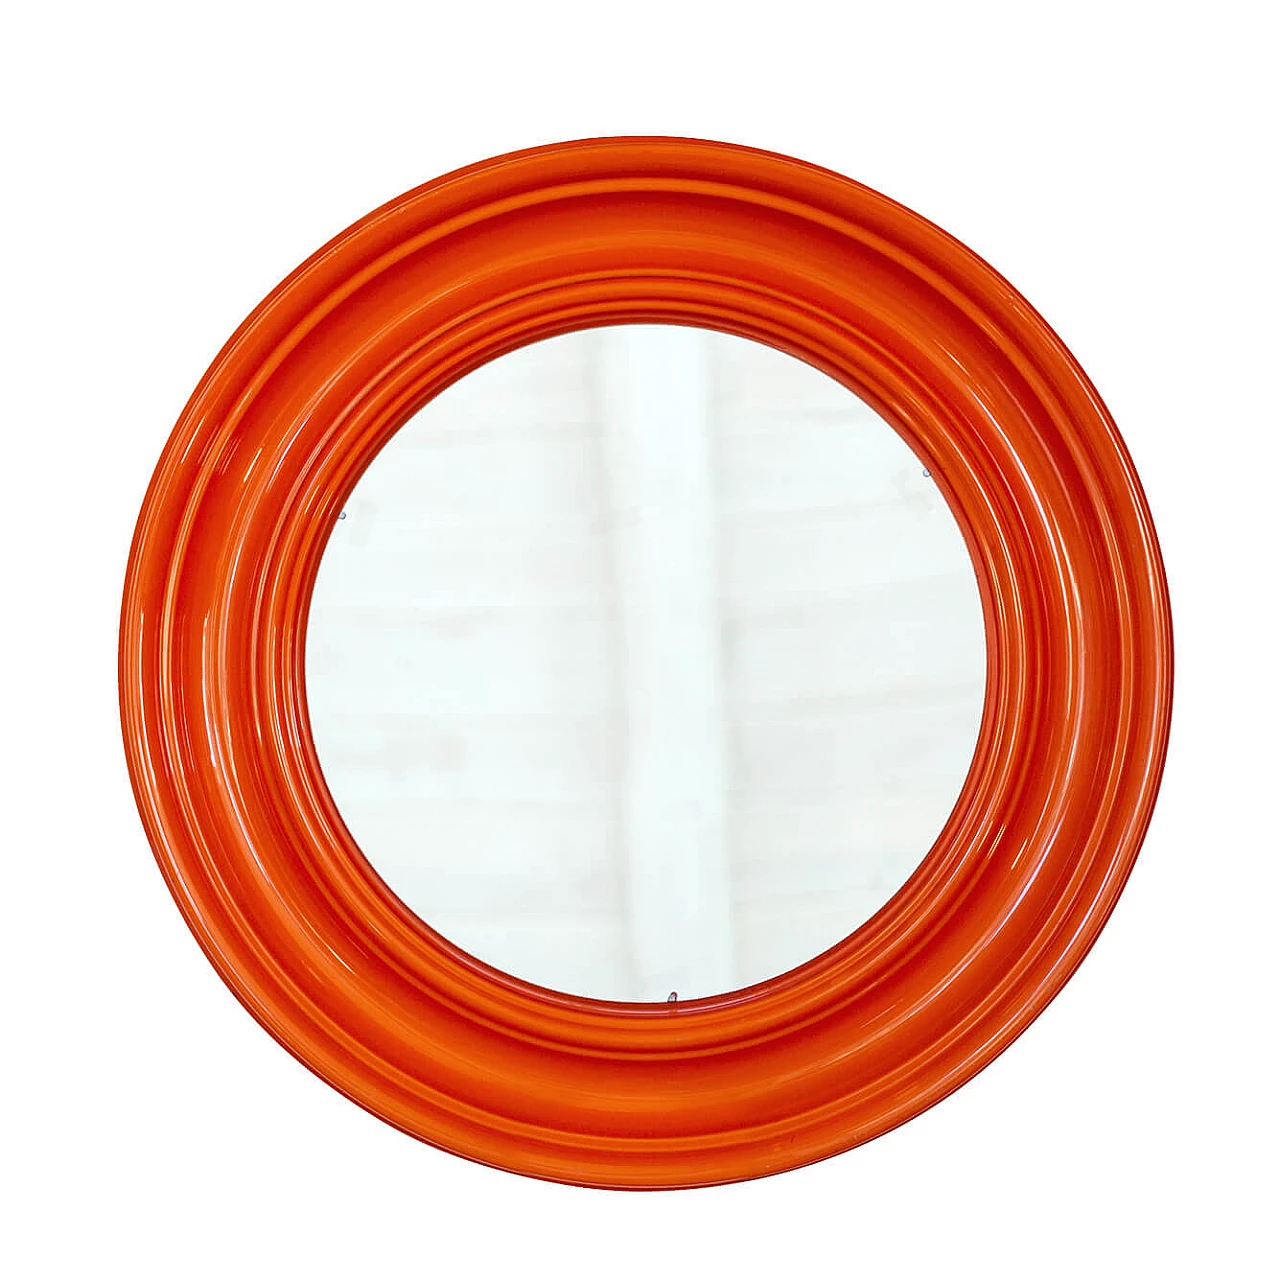 Specchio space age rotondo con cornice in plastica arancione, anni '60 1239428